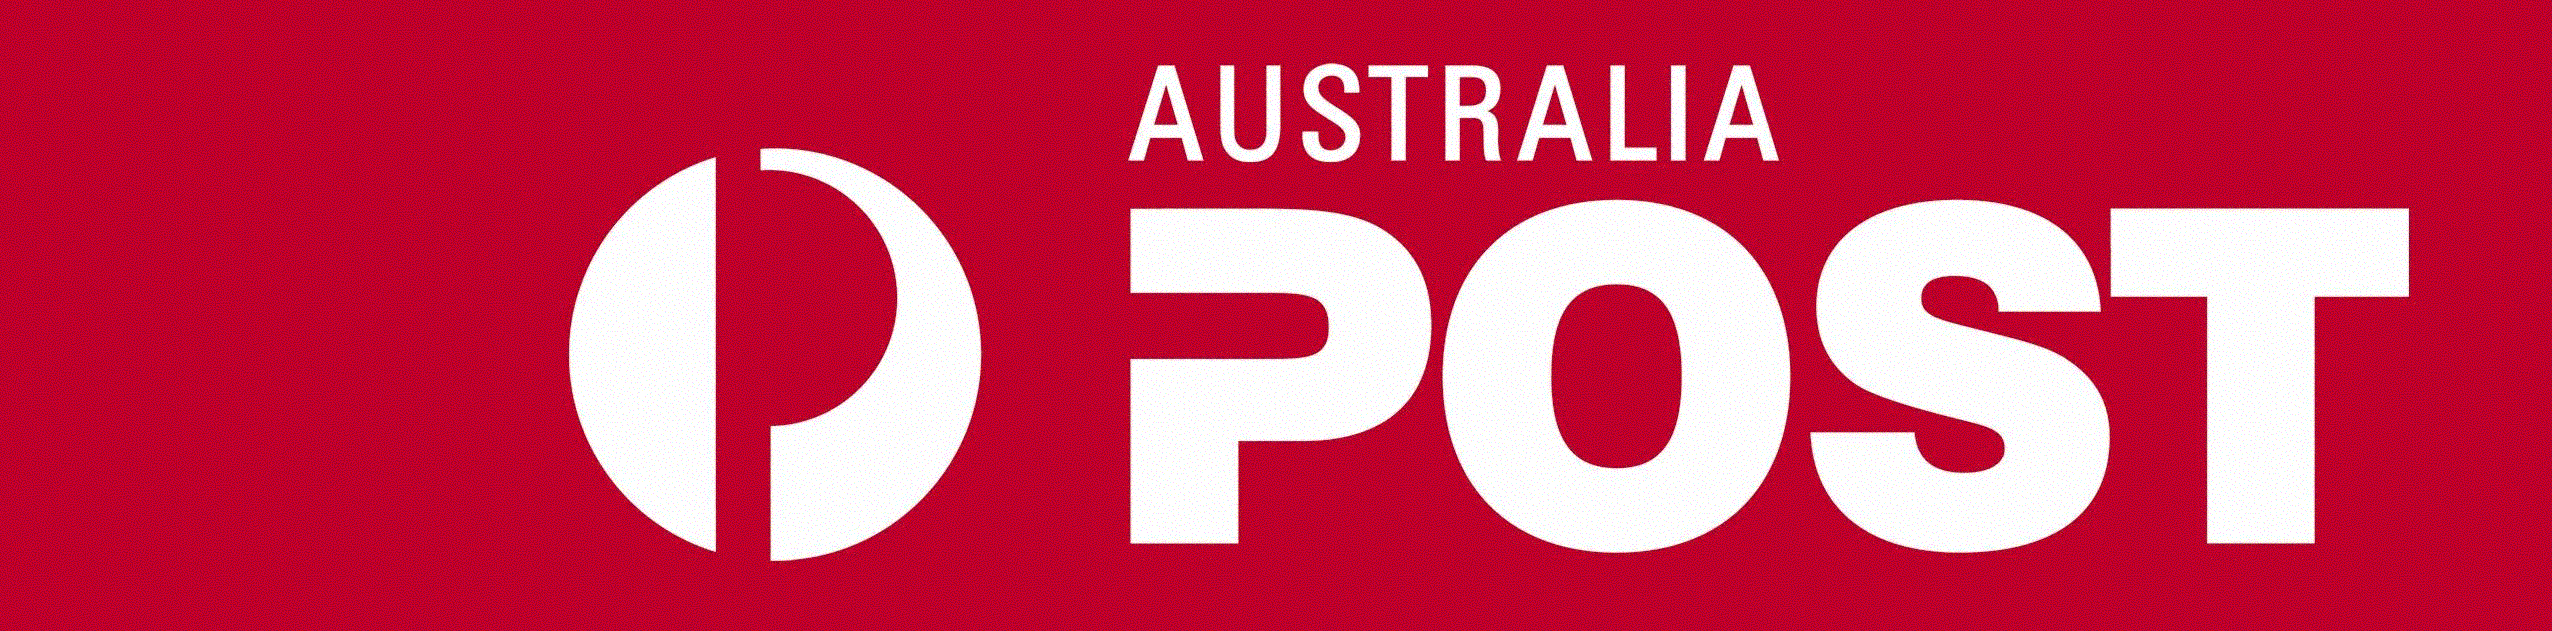 australiapost-logo-cmyk-1.gif